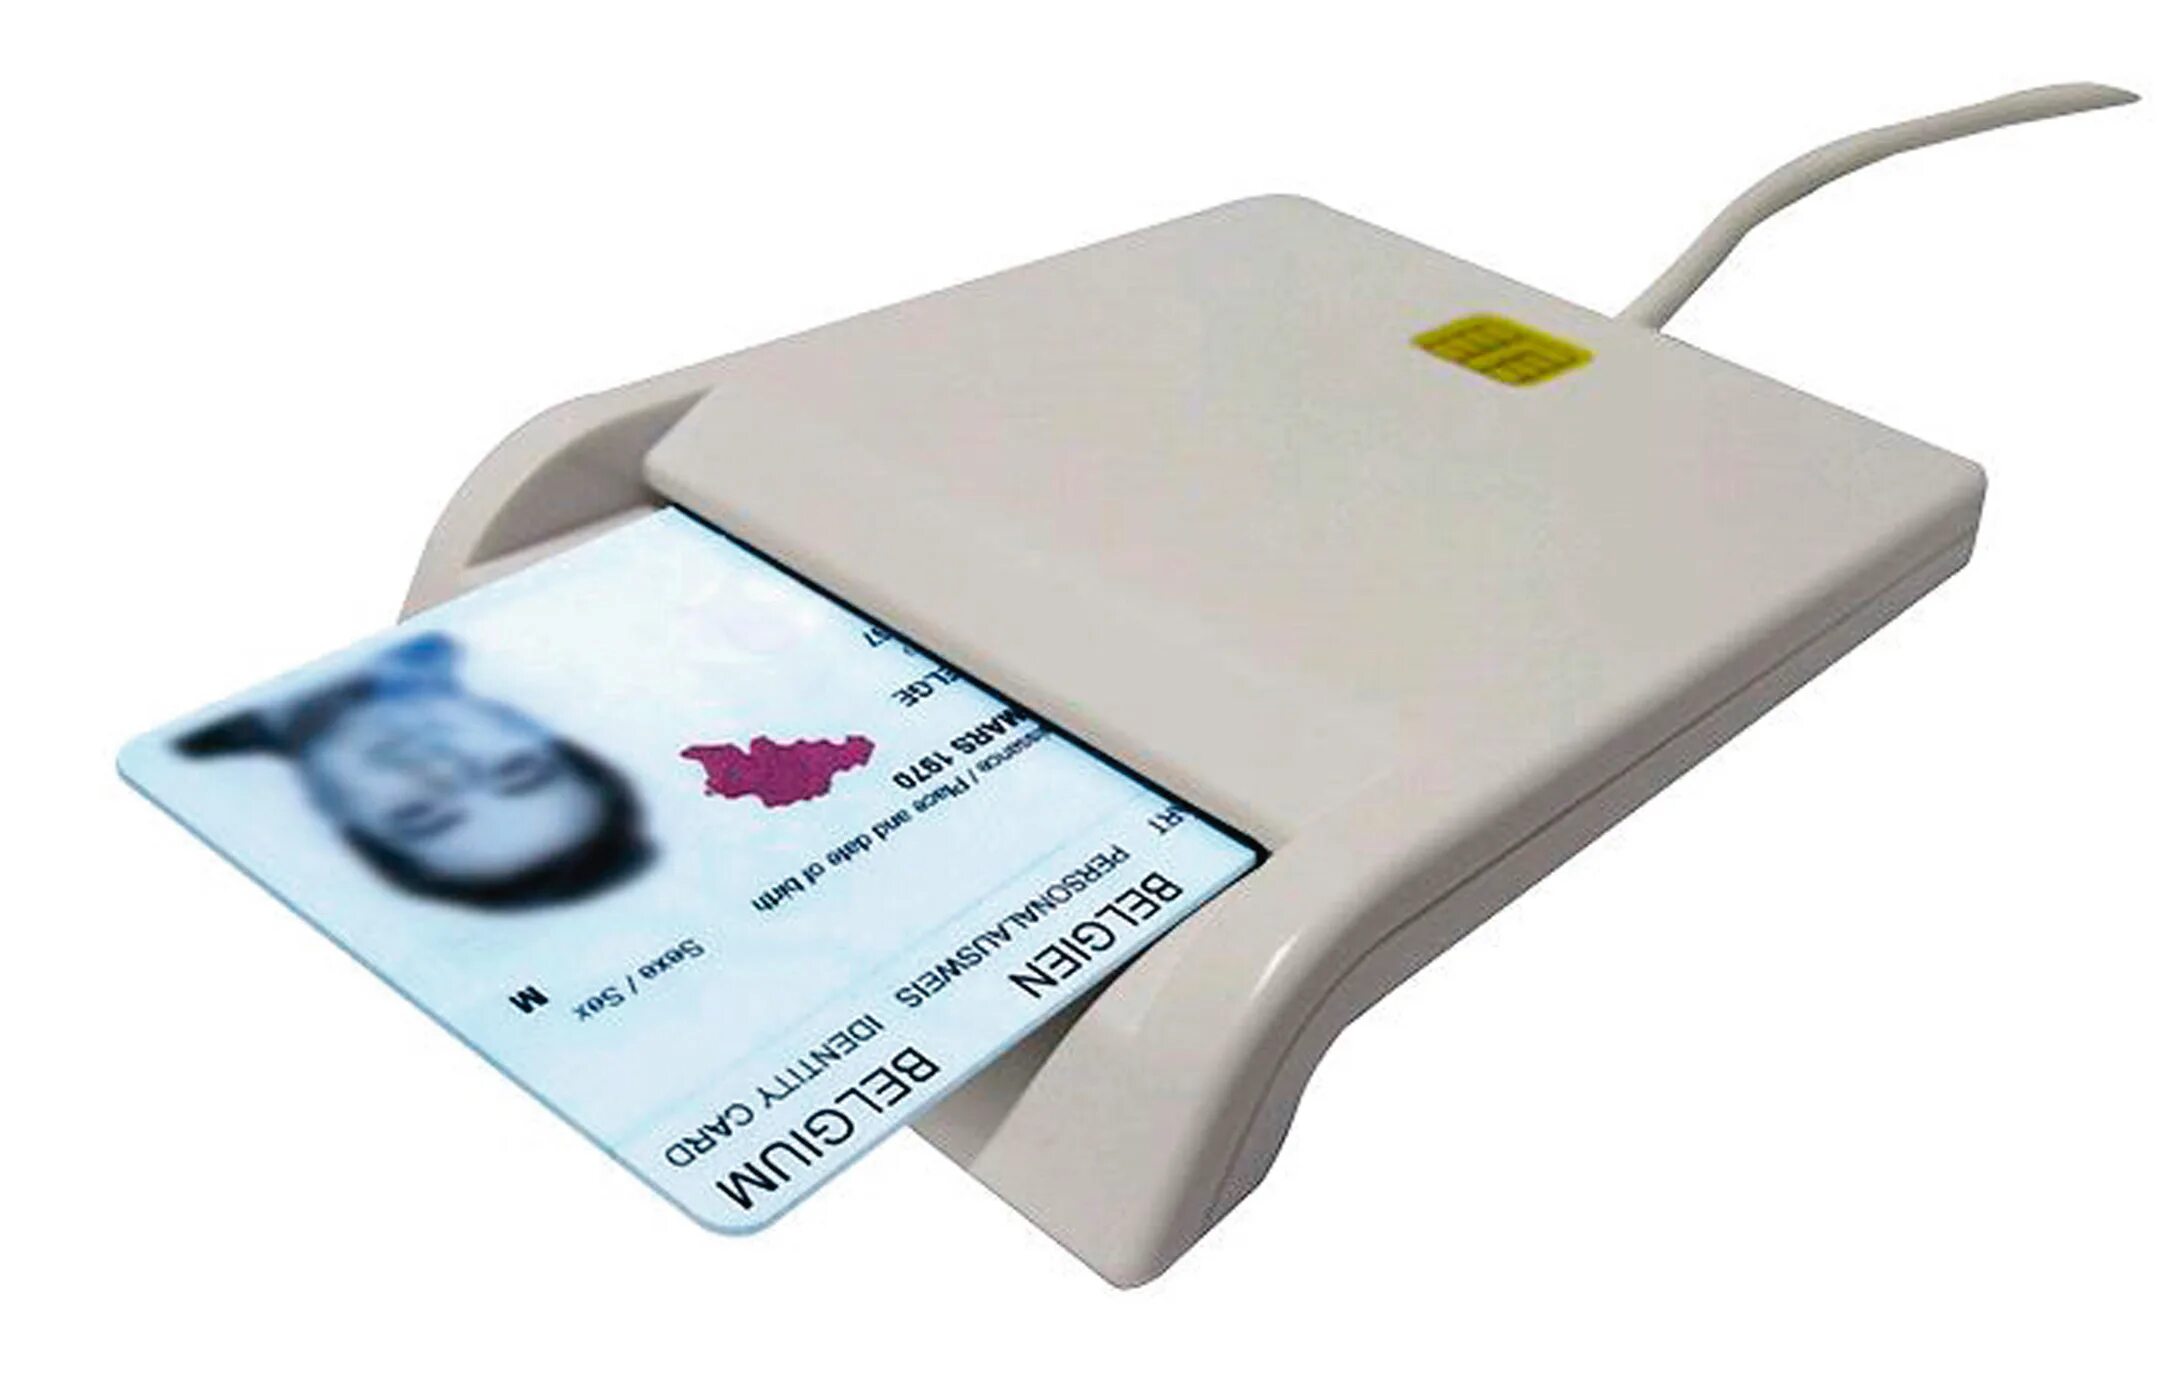 Mini Card Reader model mcr4600 картридер для смарт-карт. Считыватель смарт карты Eid. Считыватель смарт-карт УЭК, 80х45. Считыватель бесконтактный смарт-карт 234698. Умные смарт карты